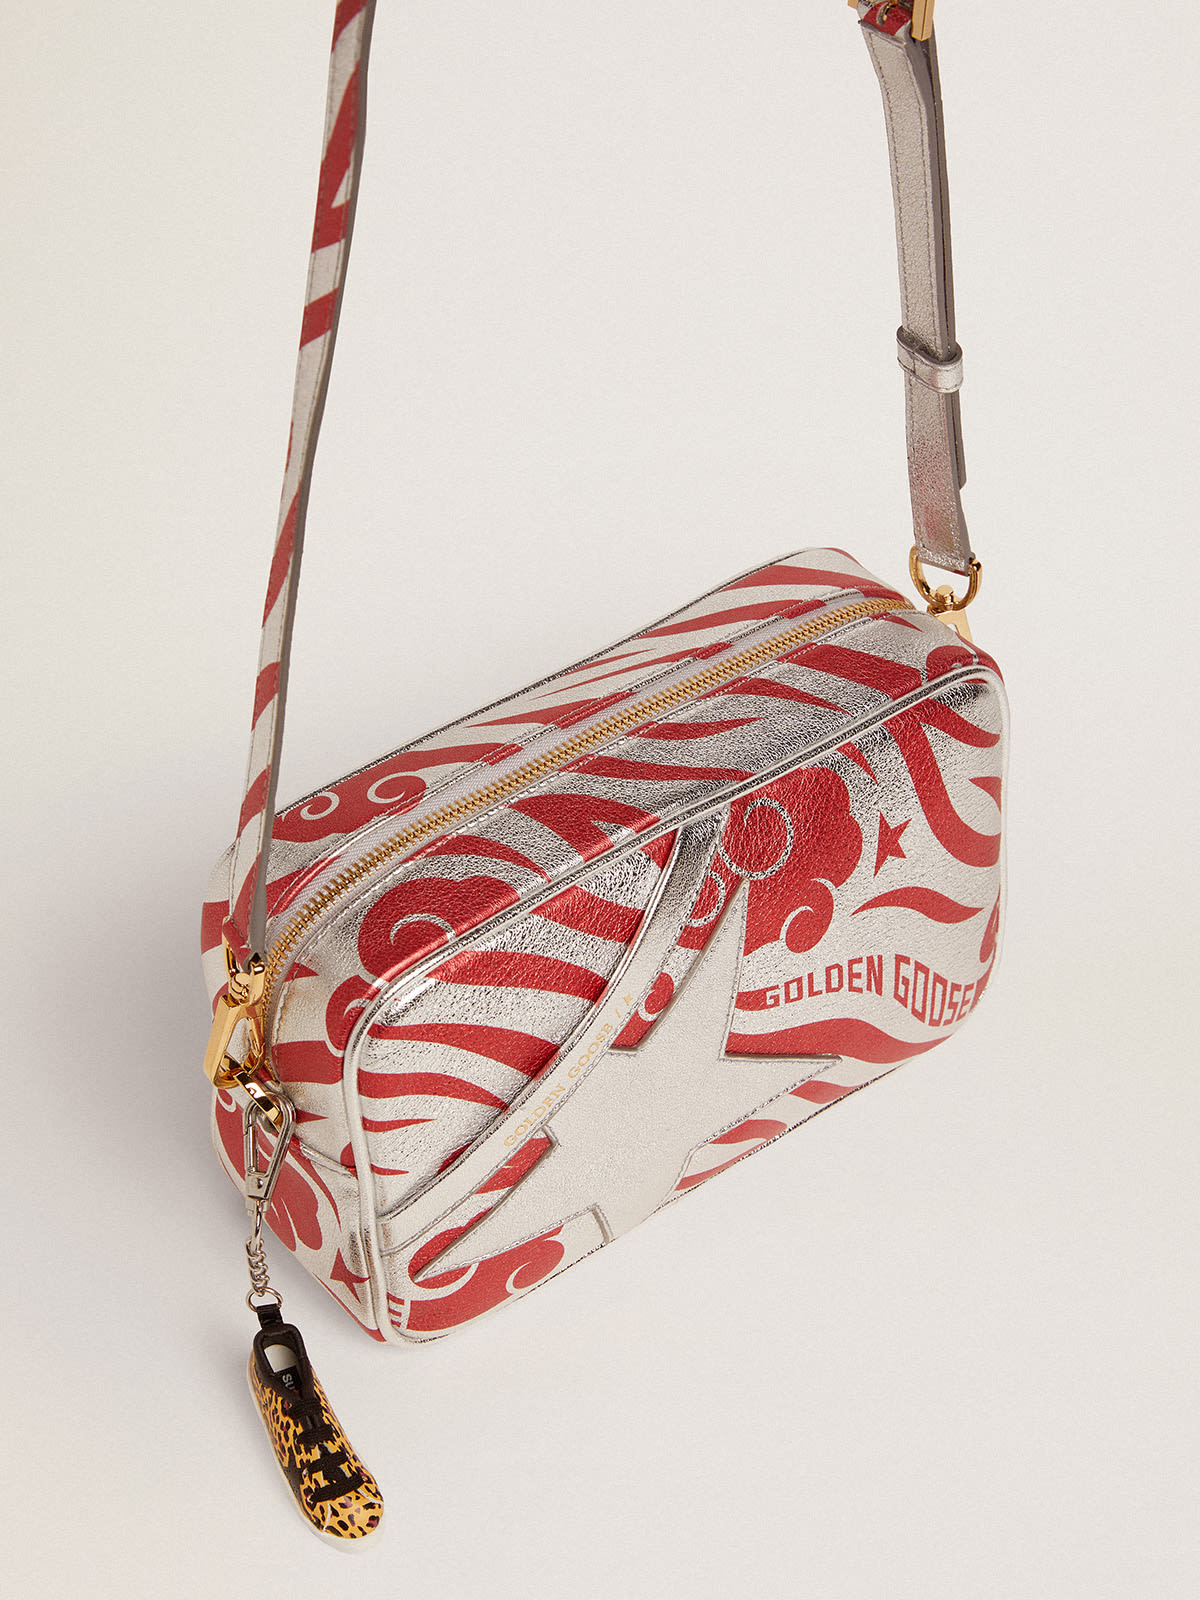 Golden Goose - Sac Star Bag en cuir lamé argenté avec étoile ton sur ton et imprimé tigré CNY rouge in 